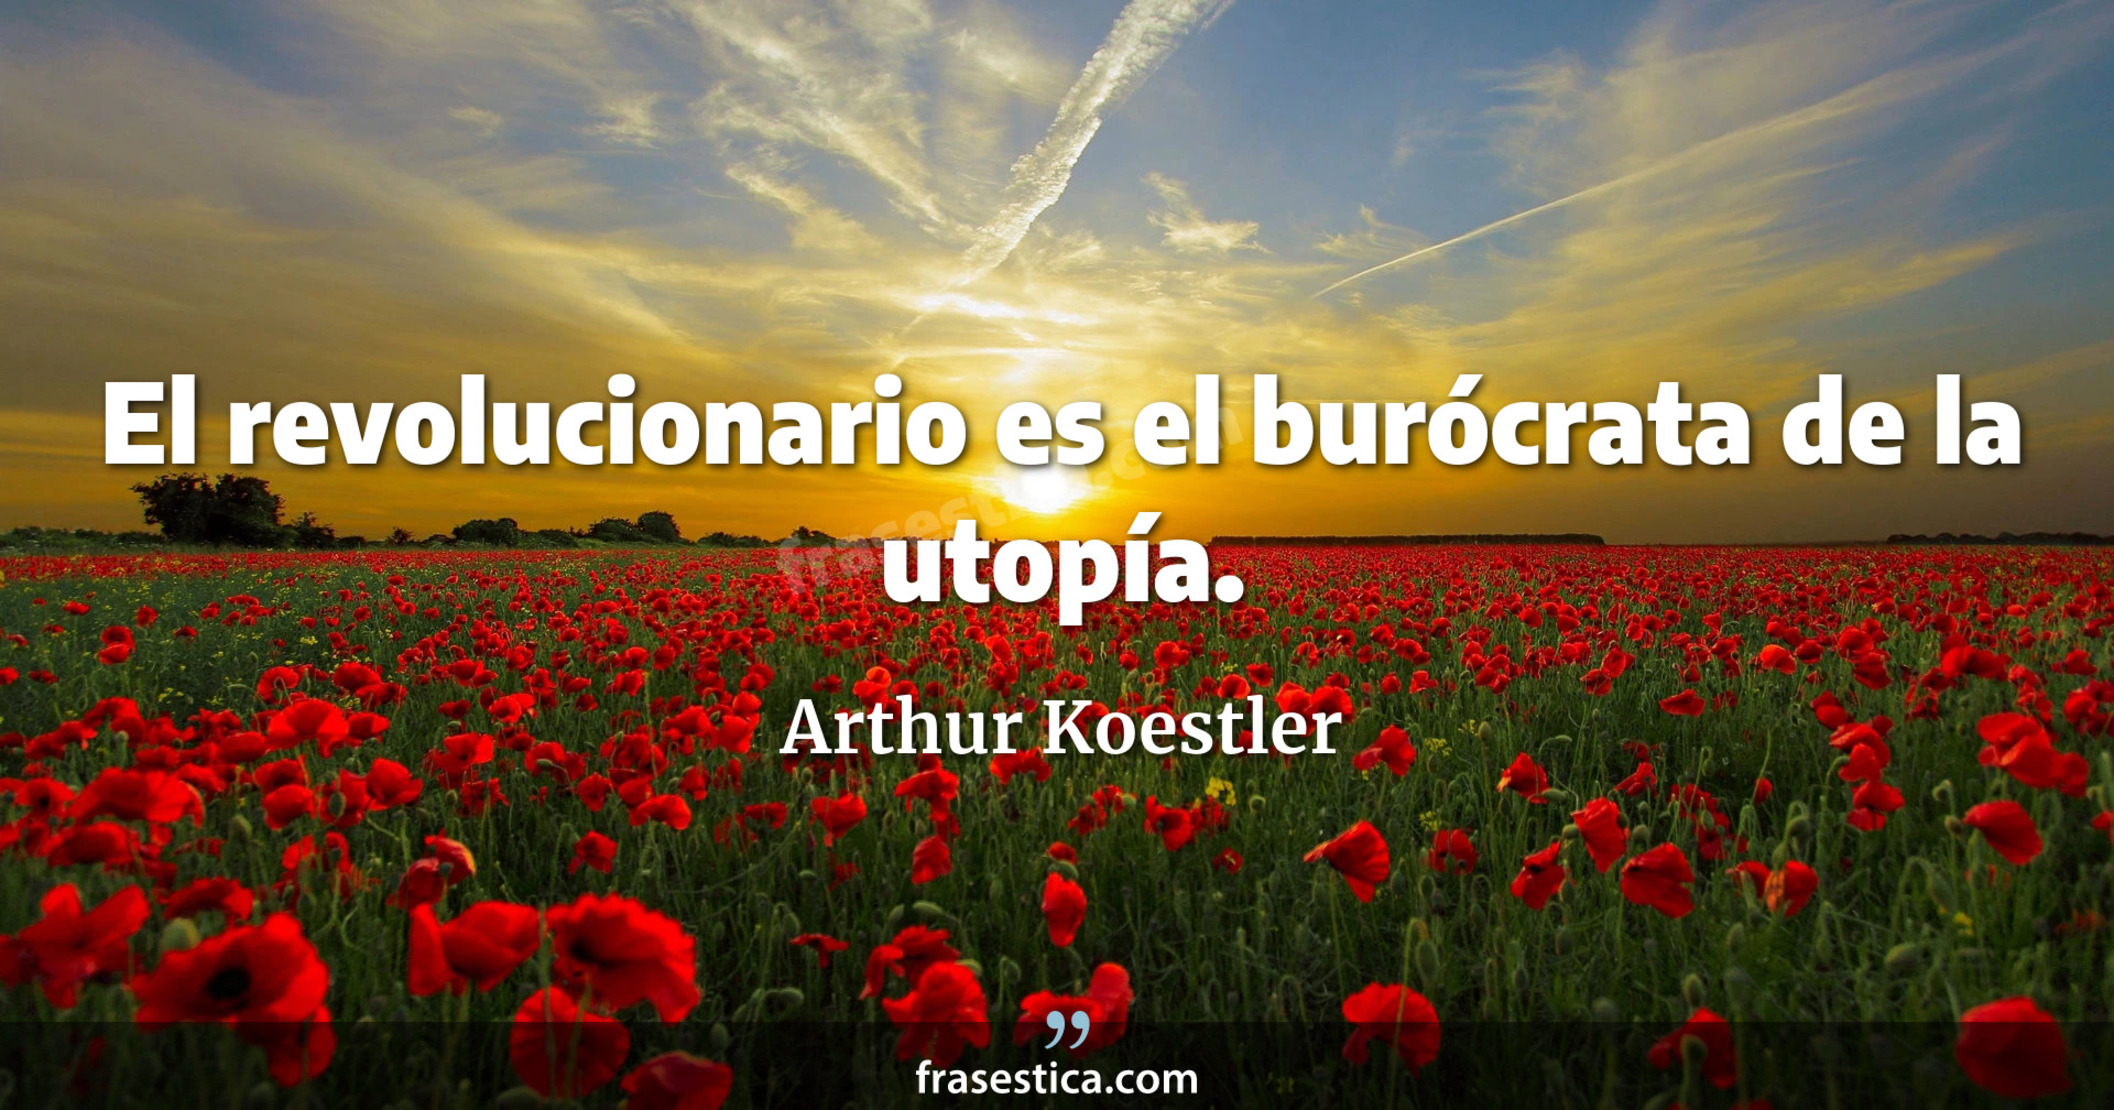 El revolucionario es el burócrata de la utopía. - Arthur Koestler